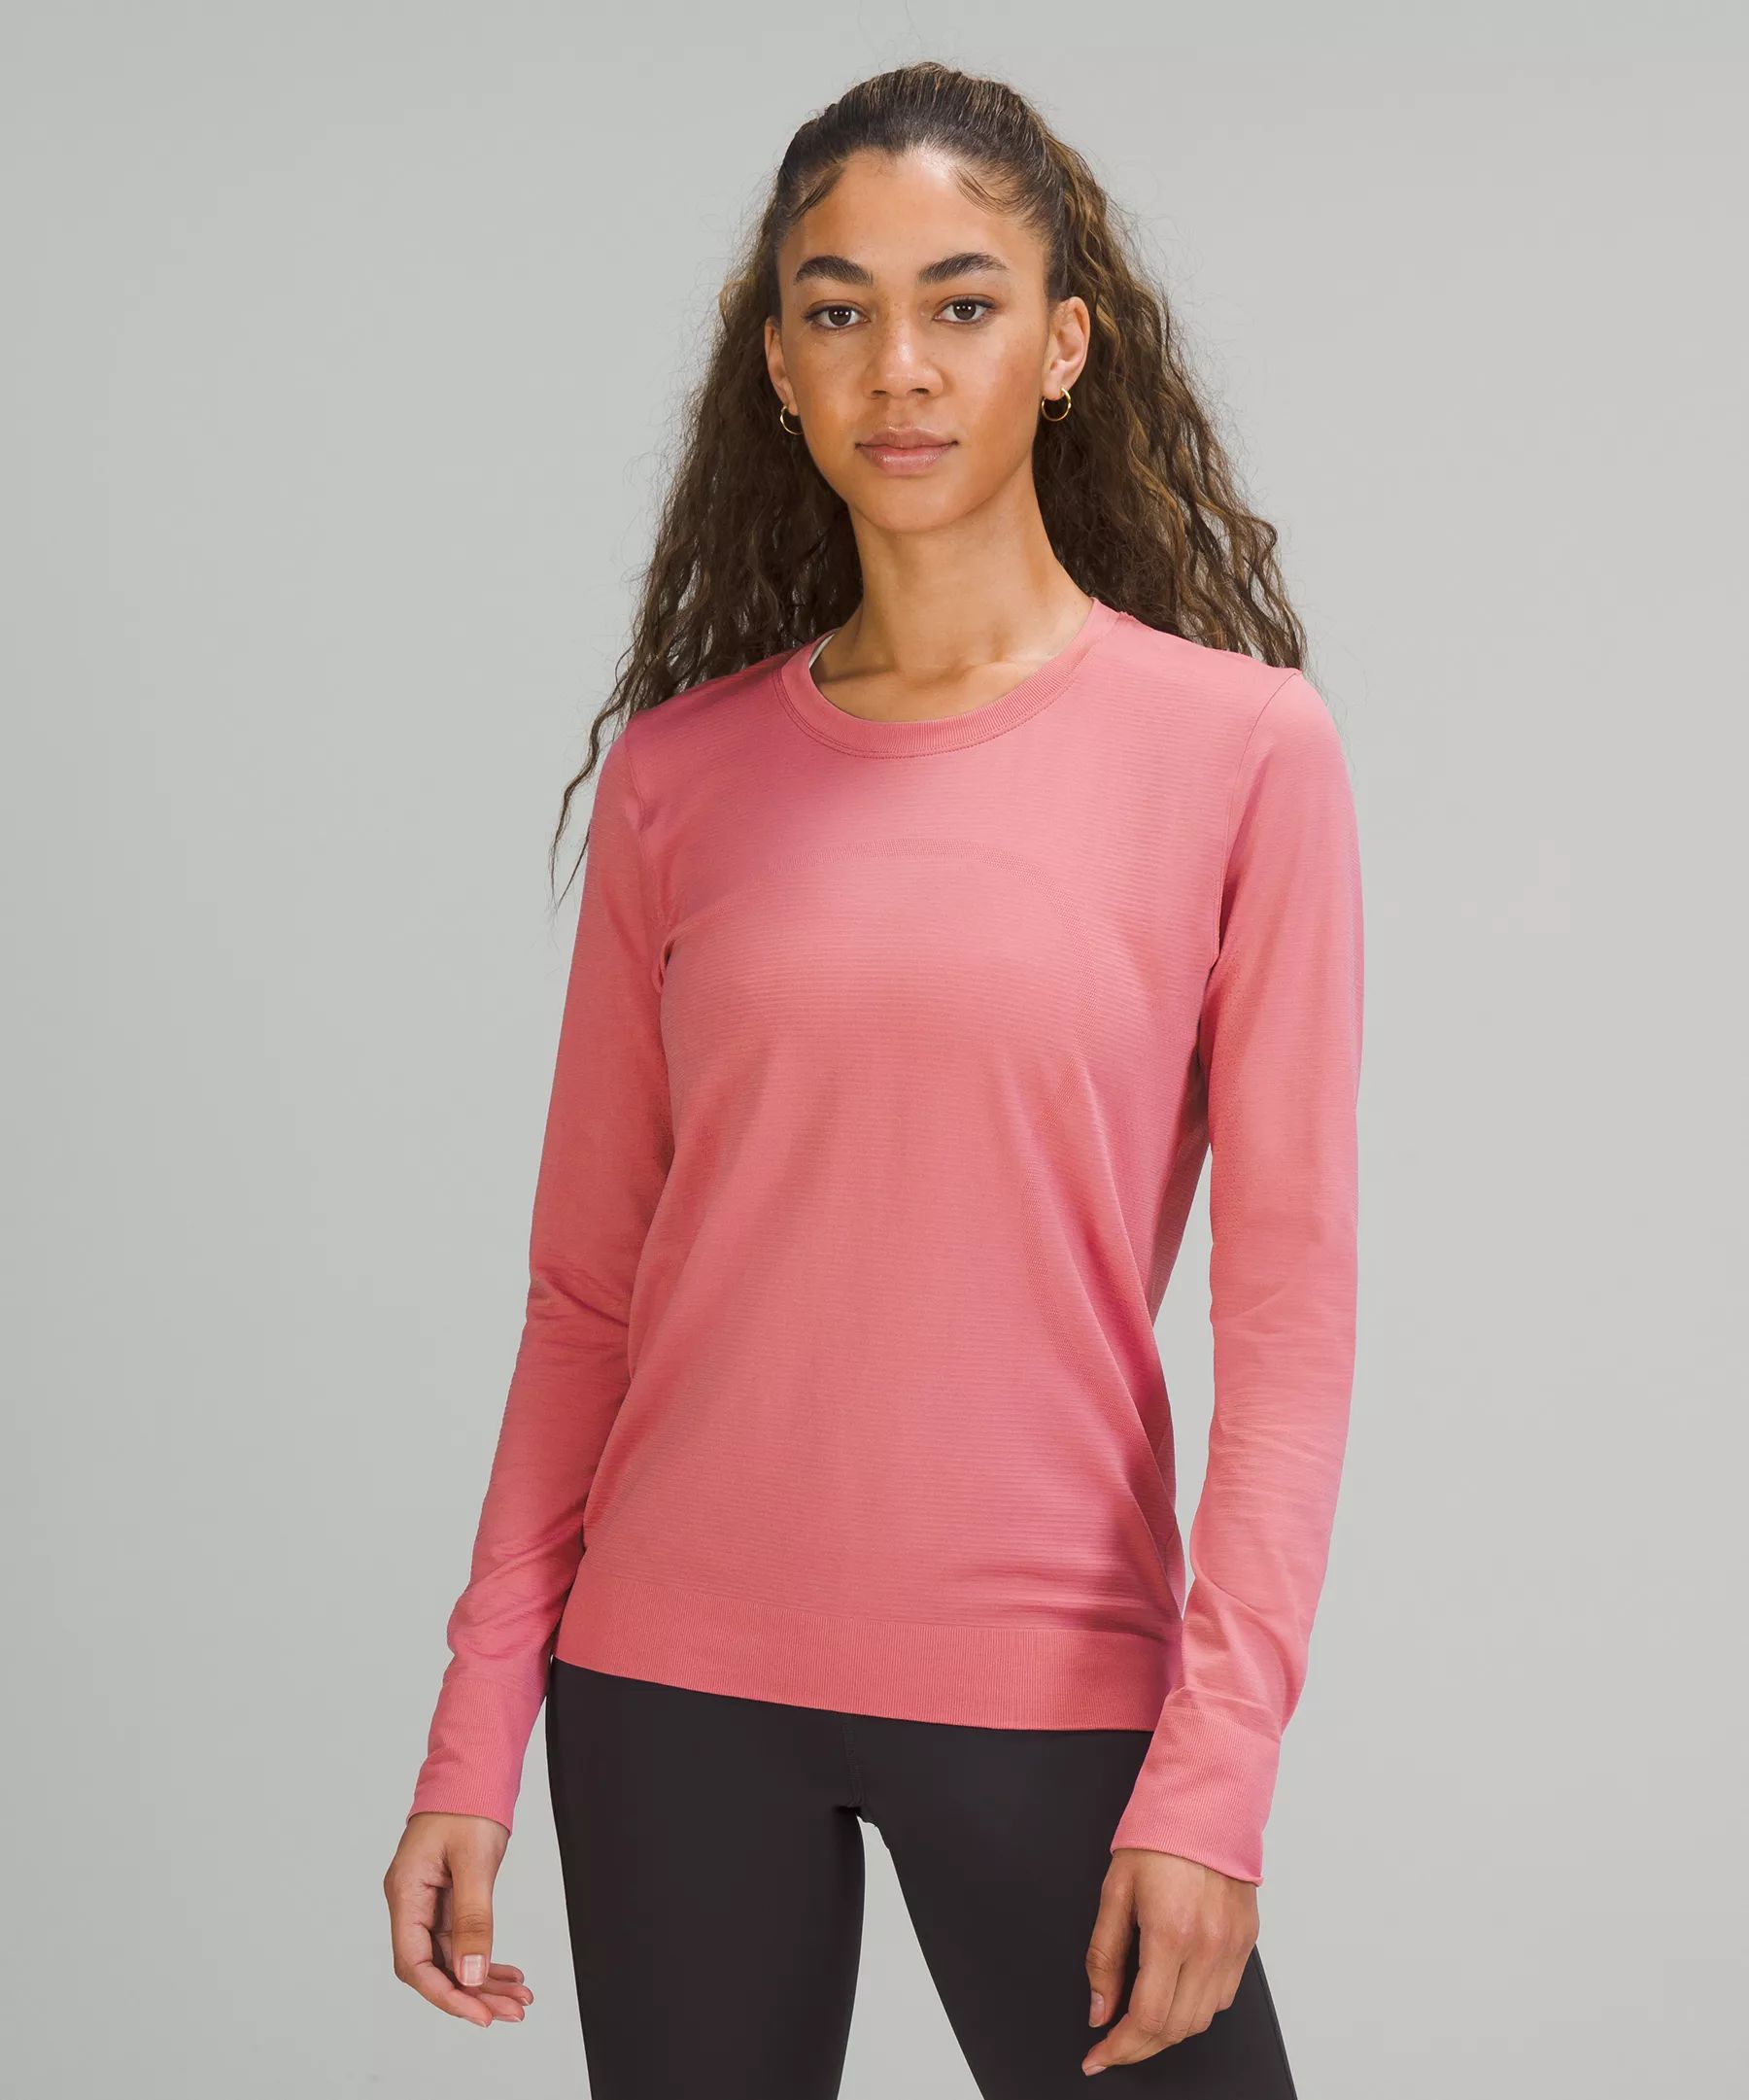 Swiftly Relaxed Long Sleeve Shirt 2.0 | Lululemon (US)